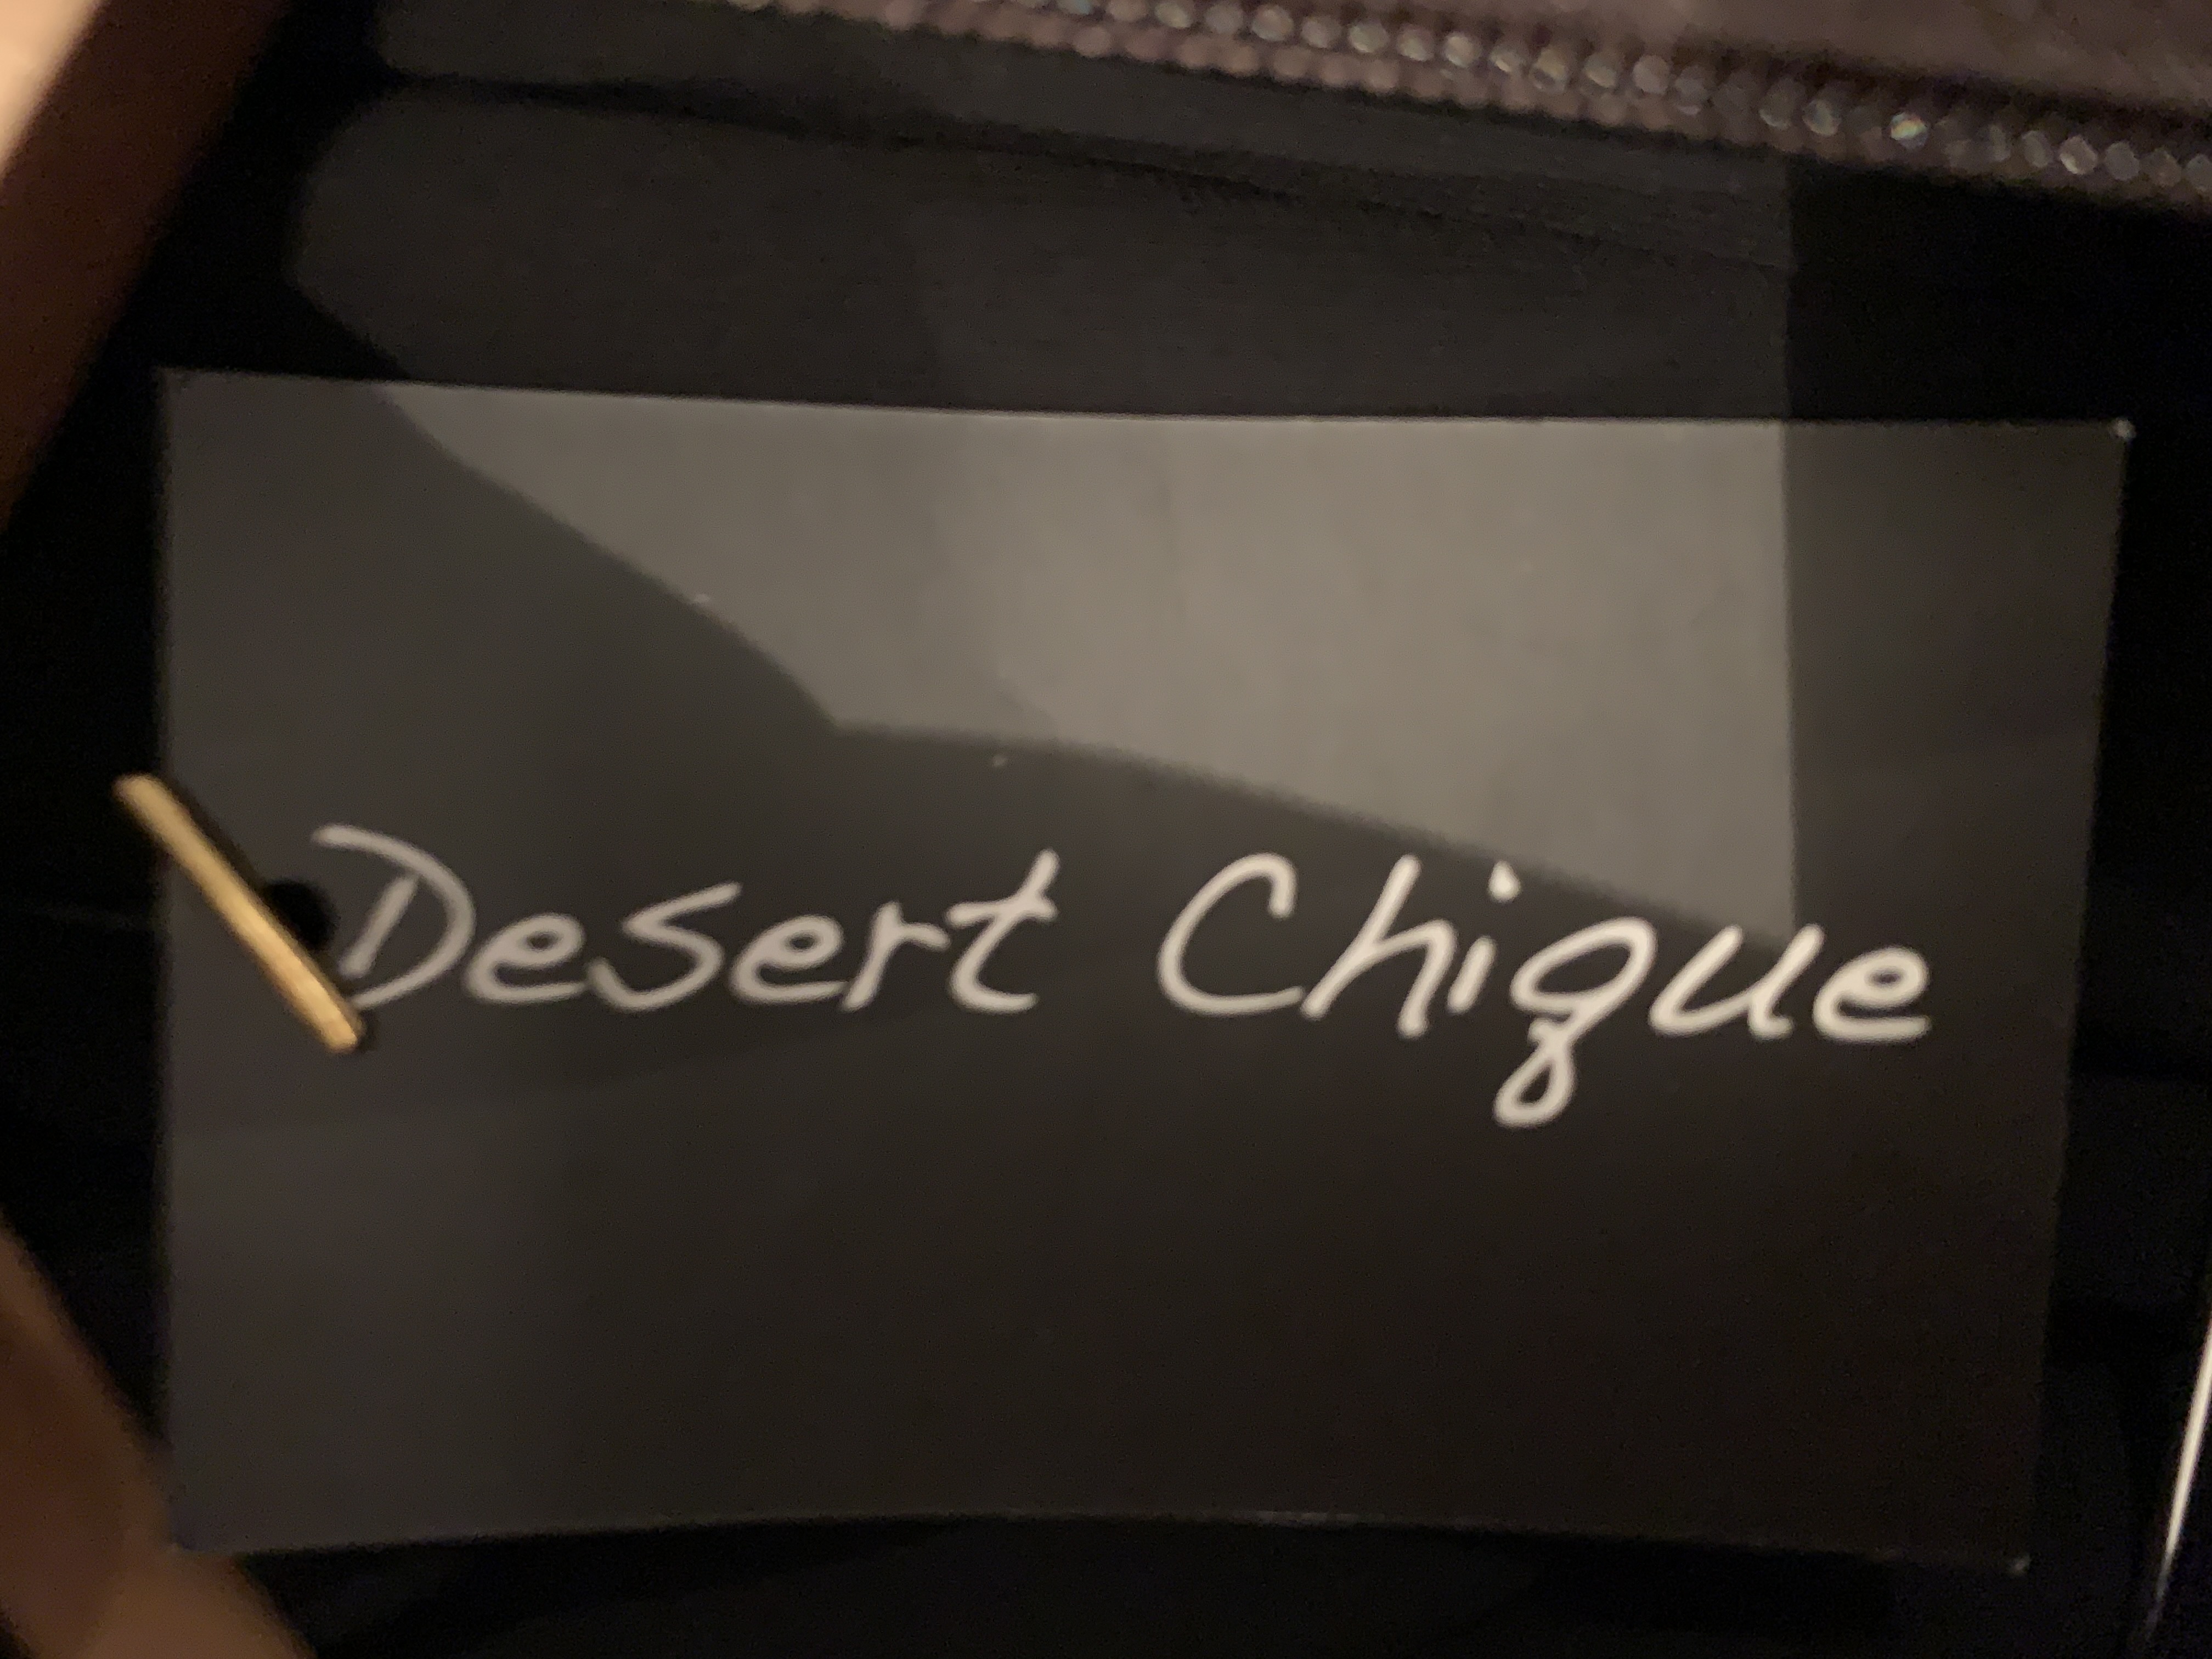 Desert Chique